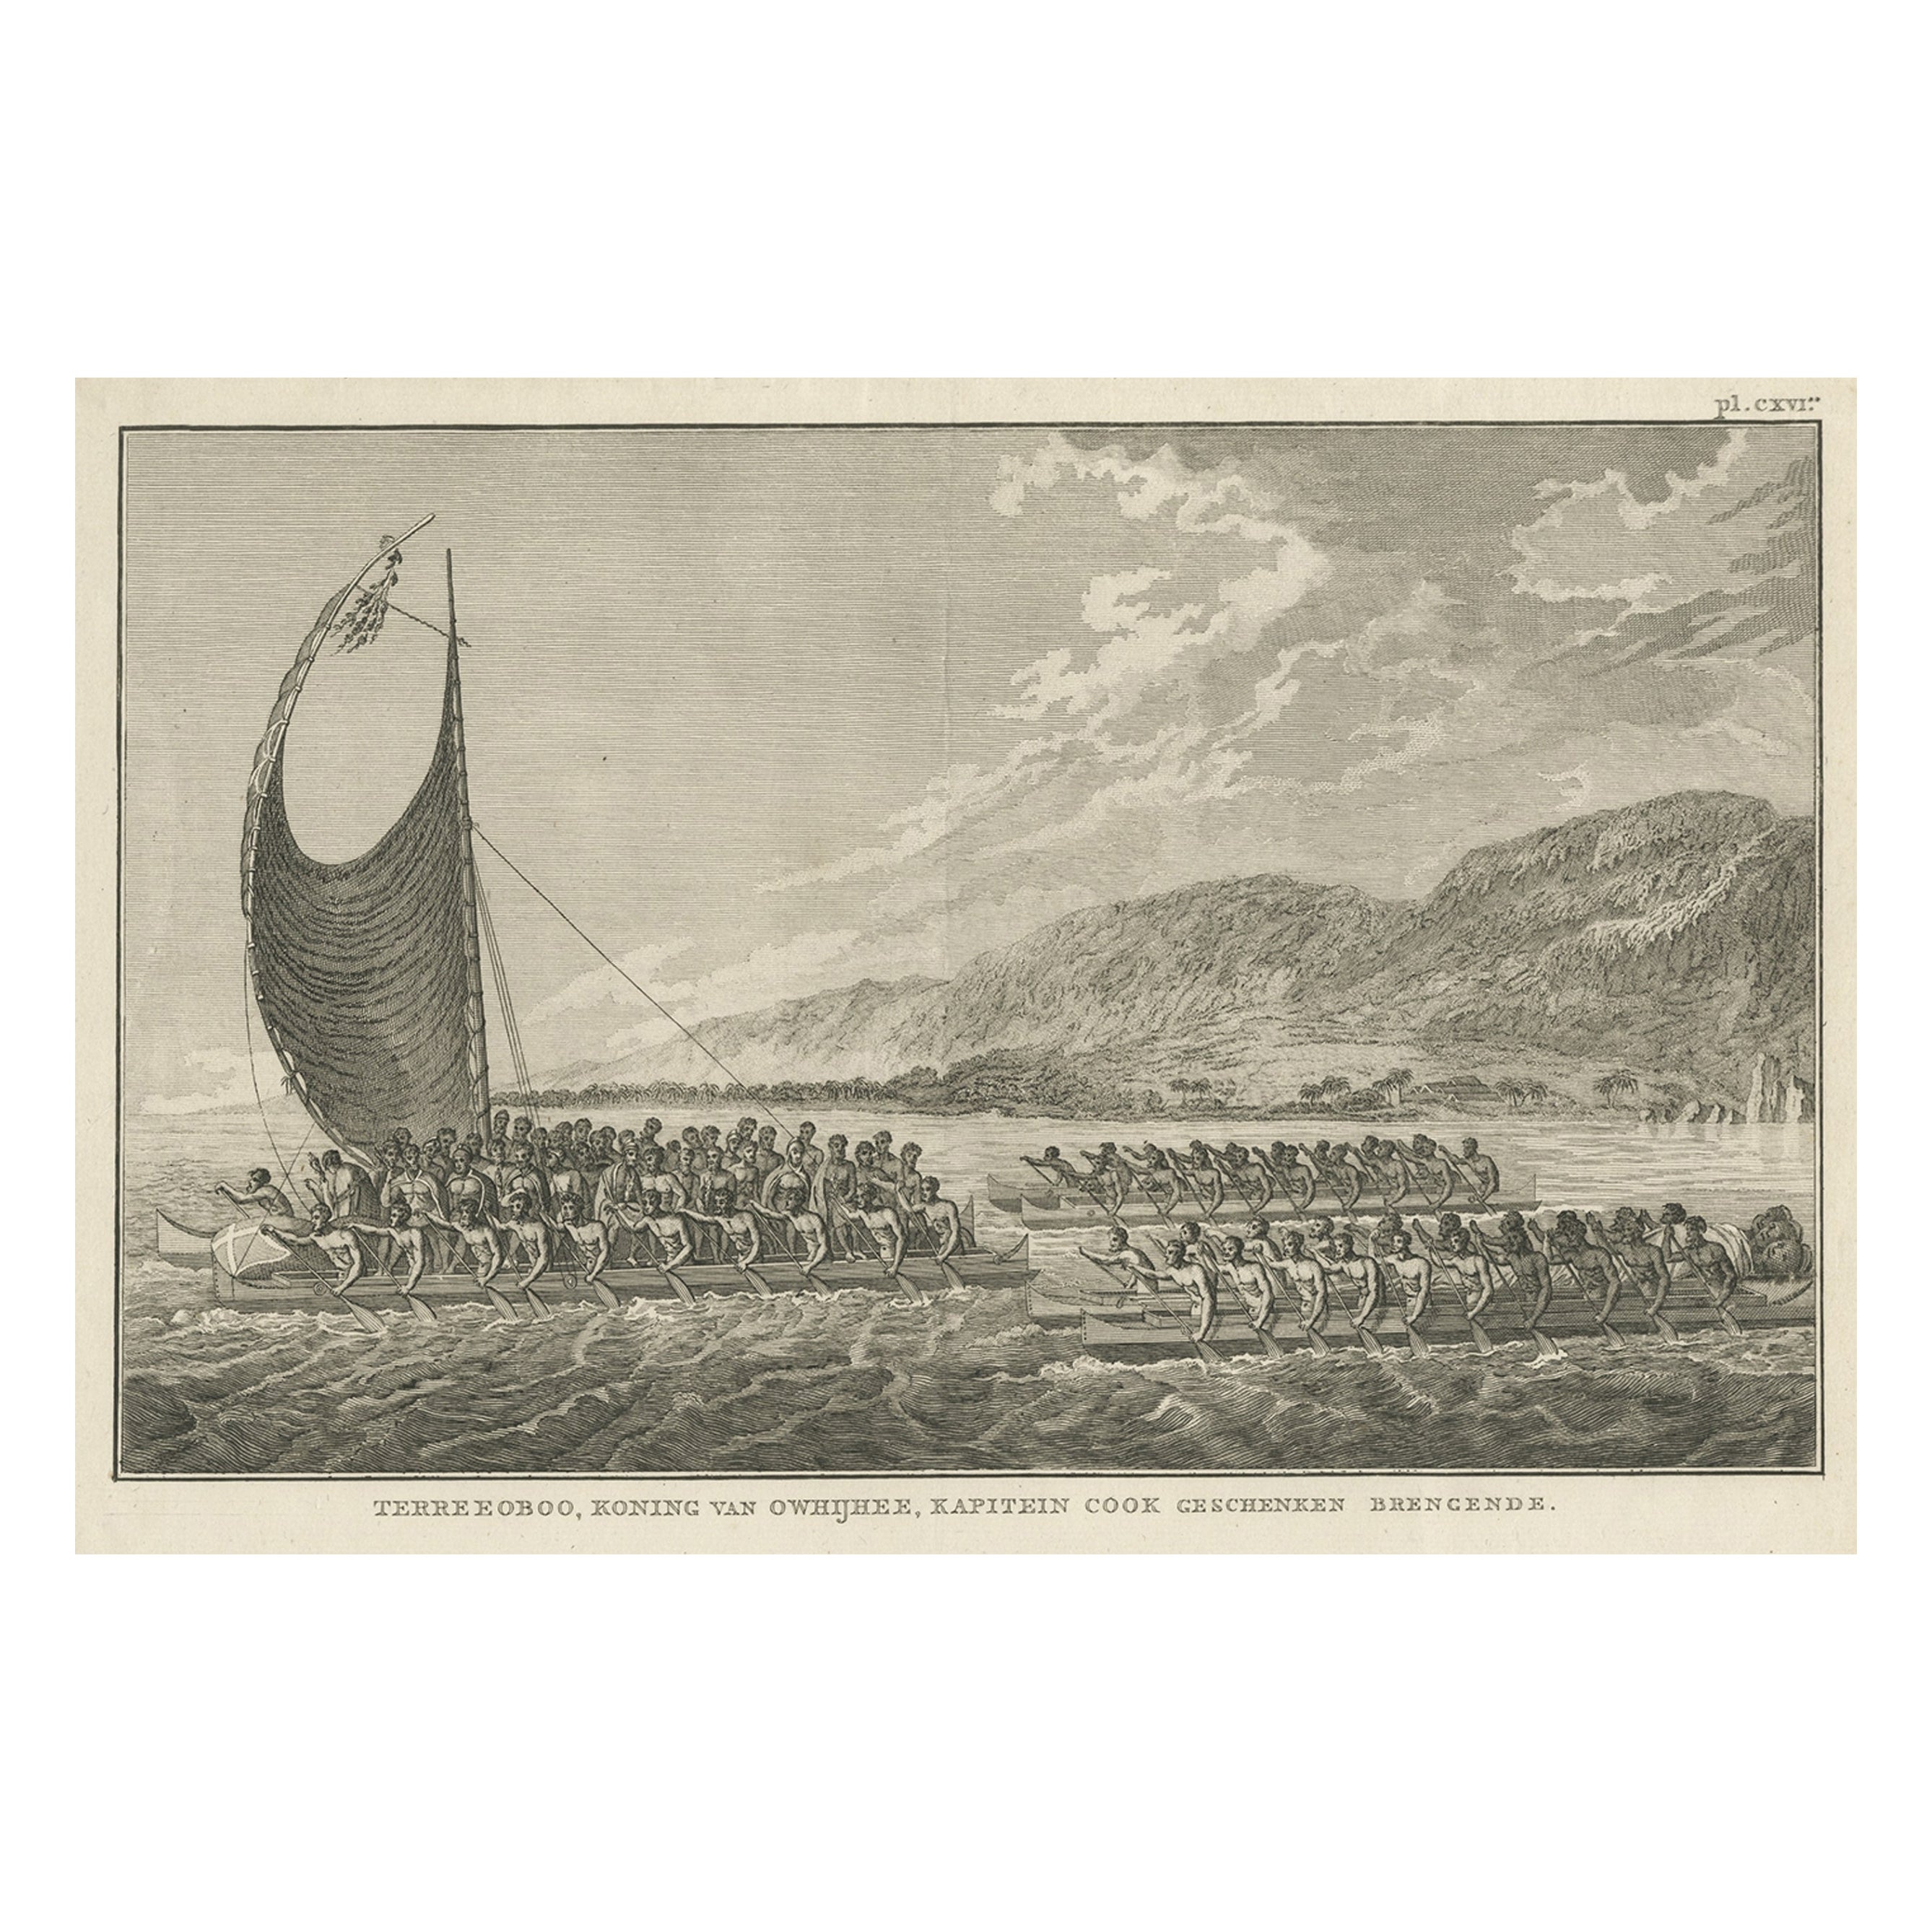 Le roi d'Owyhee, Sandwich Isles 'Hawaii' avec cadeaux pour le capitaine Cook, 1803